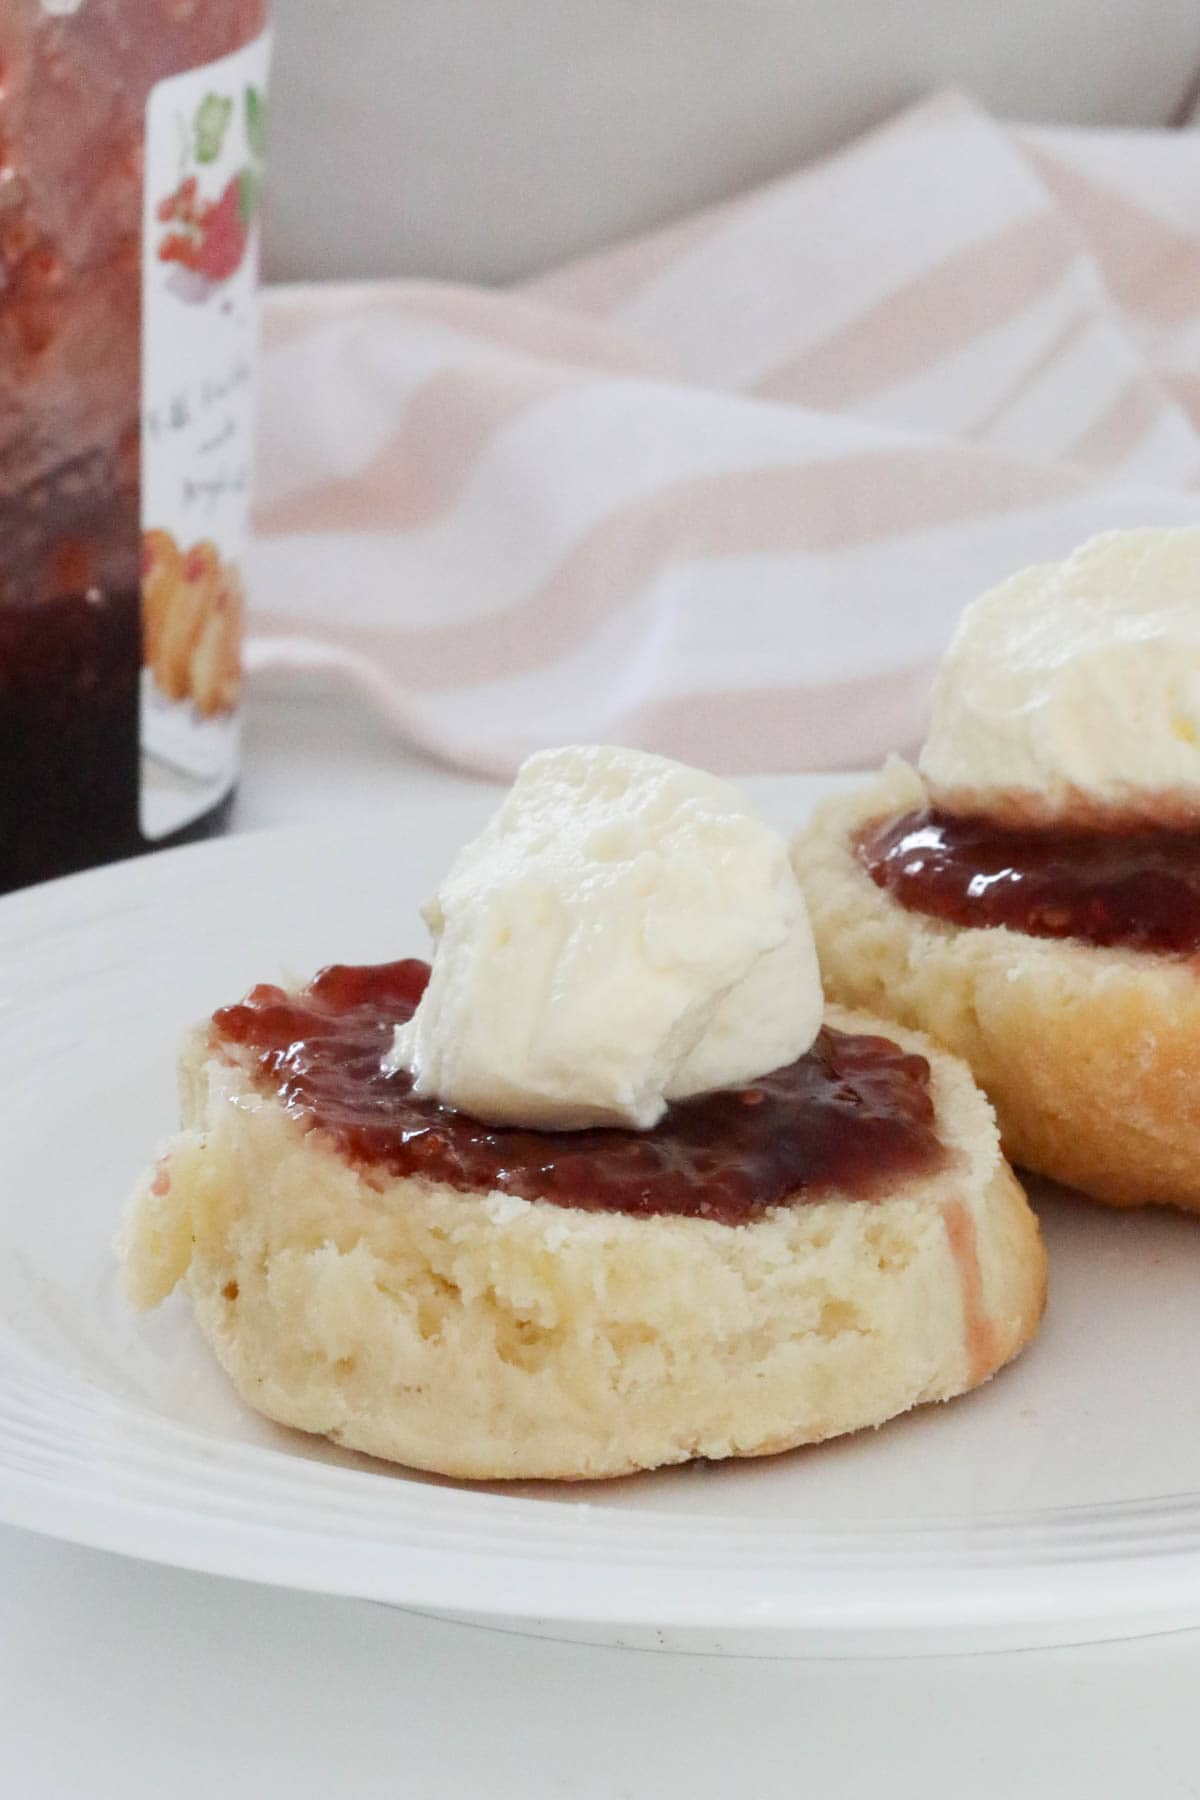 Classic scones with jam and cream.